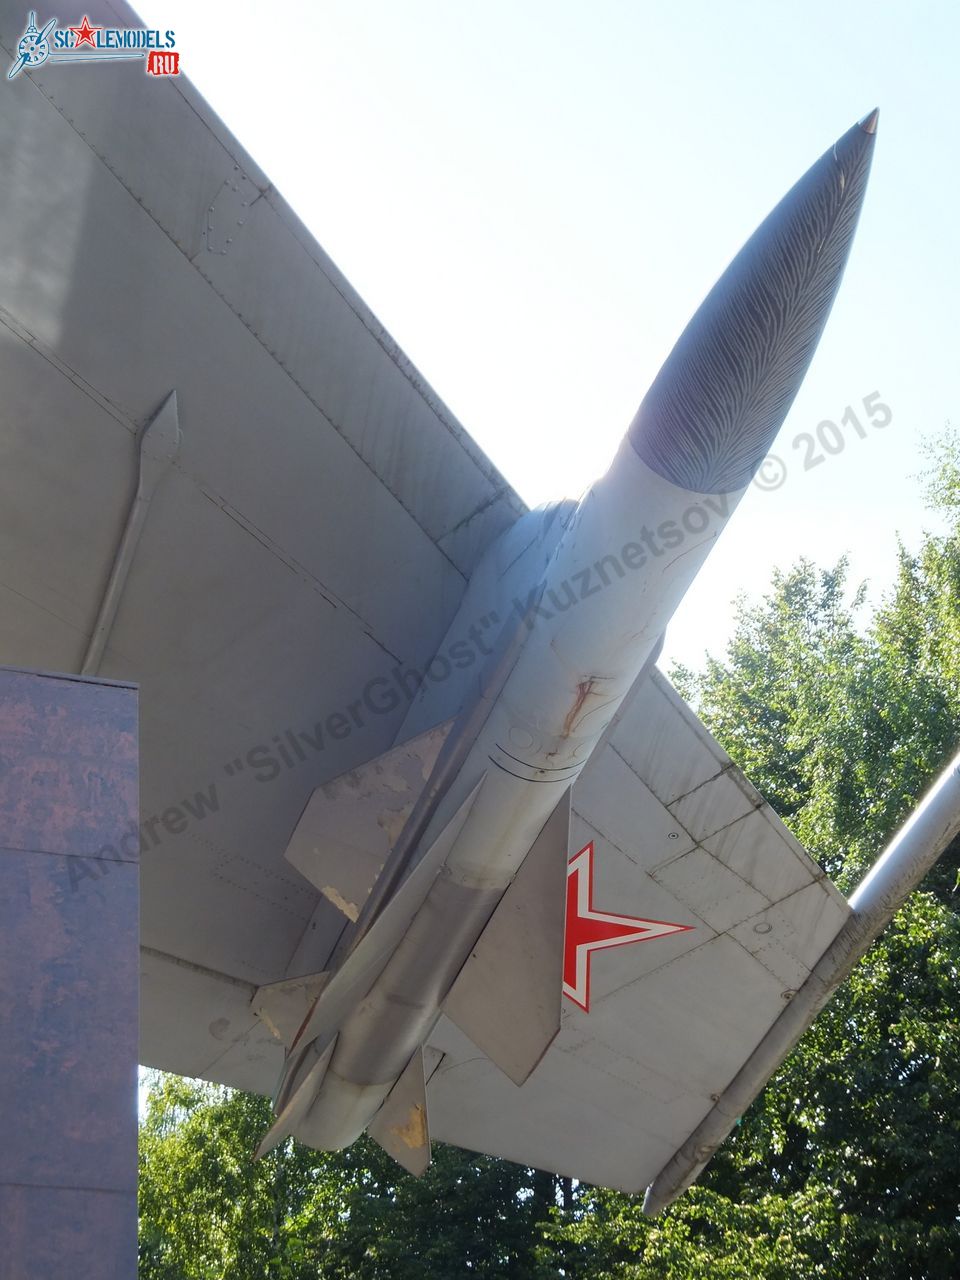 Kh-58 missile_0035.jpg